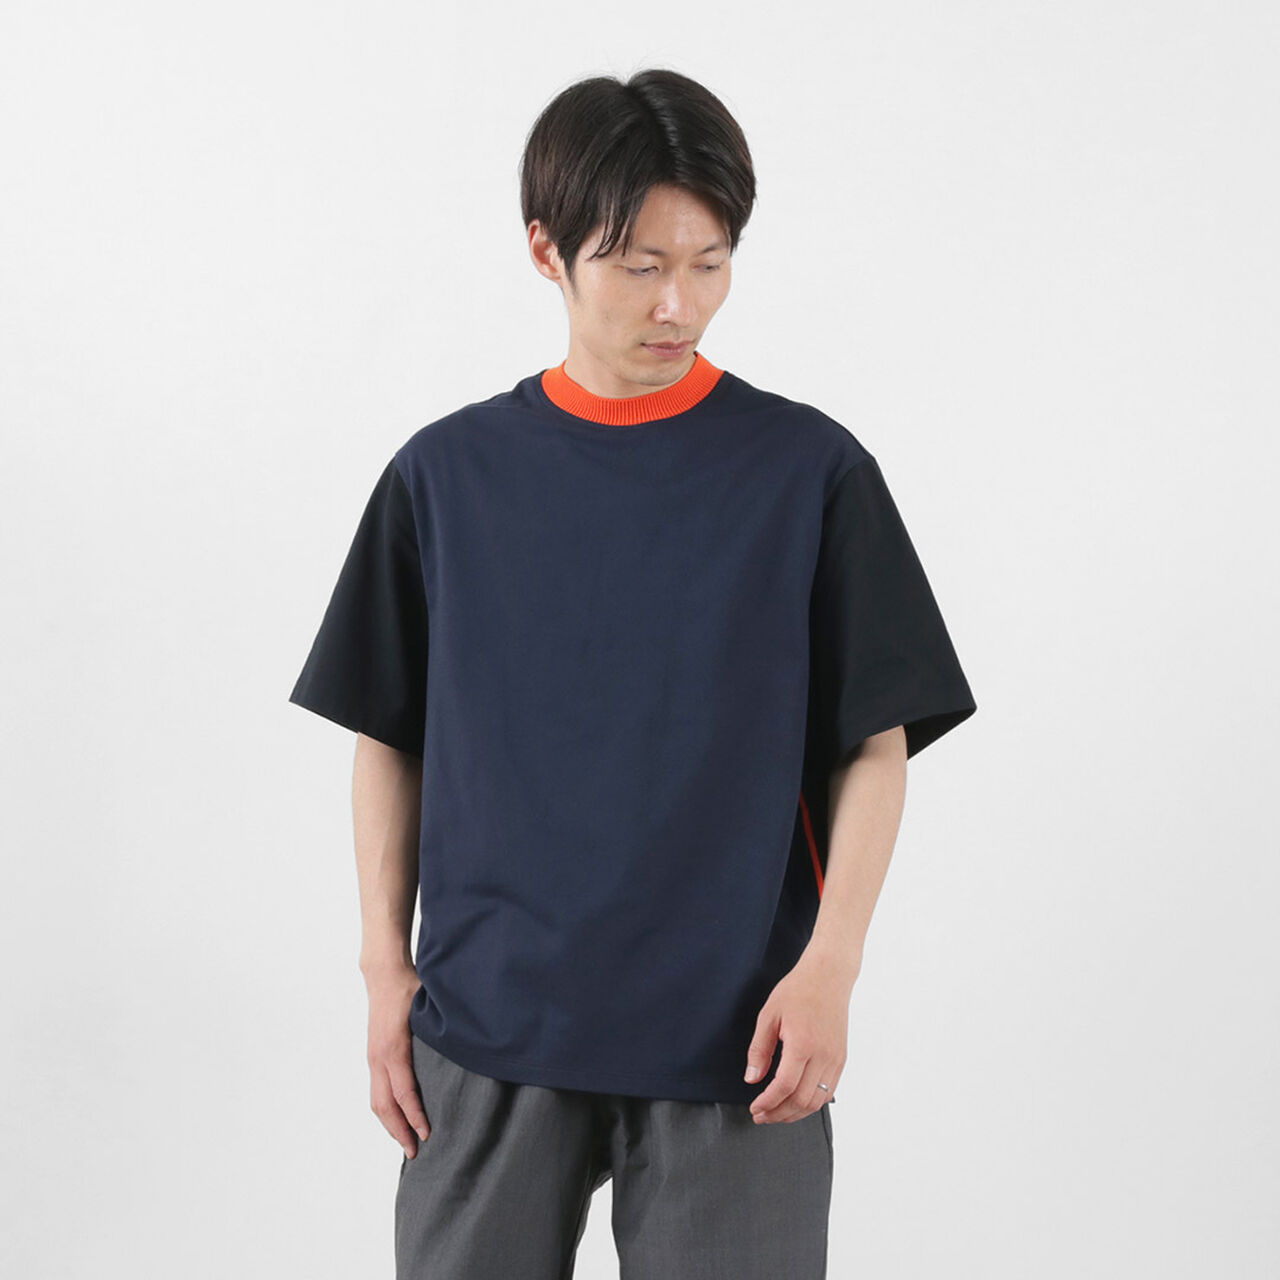 Knit Sideline T-Shirt,Navy, large image number 0